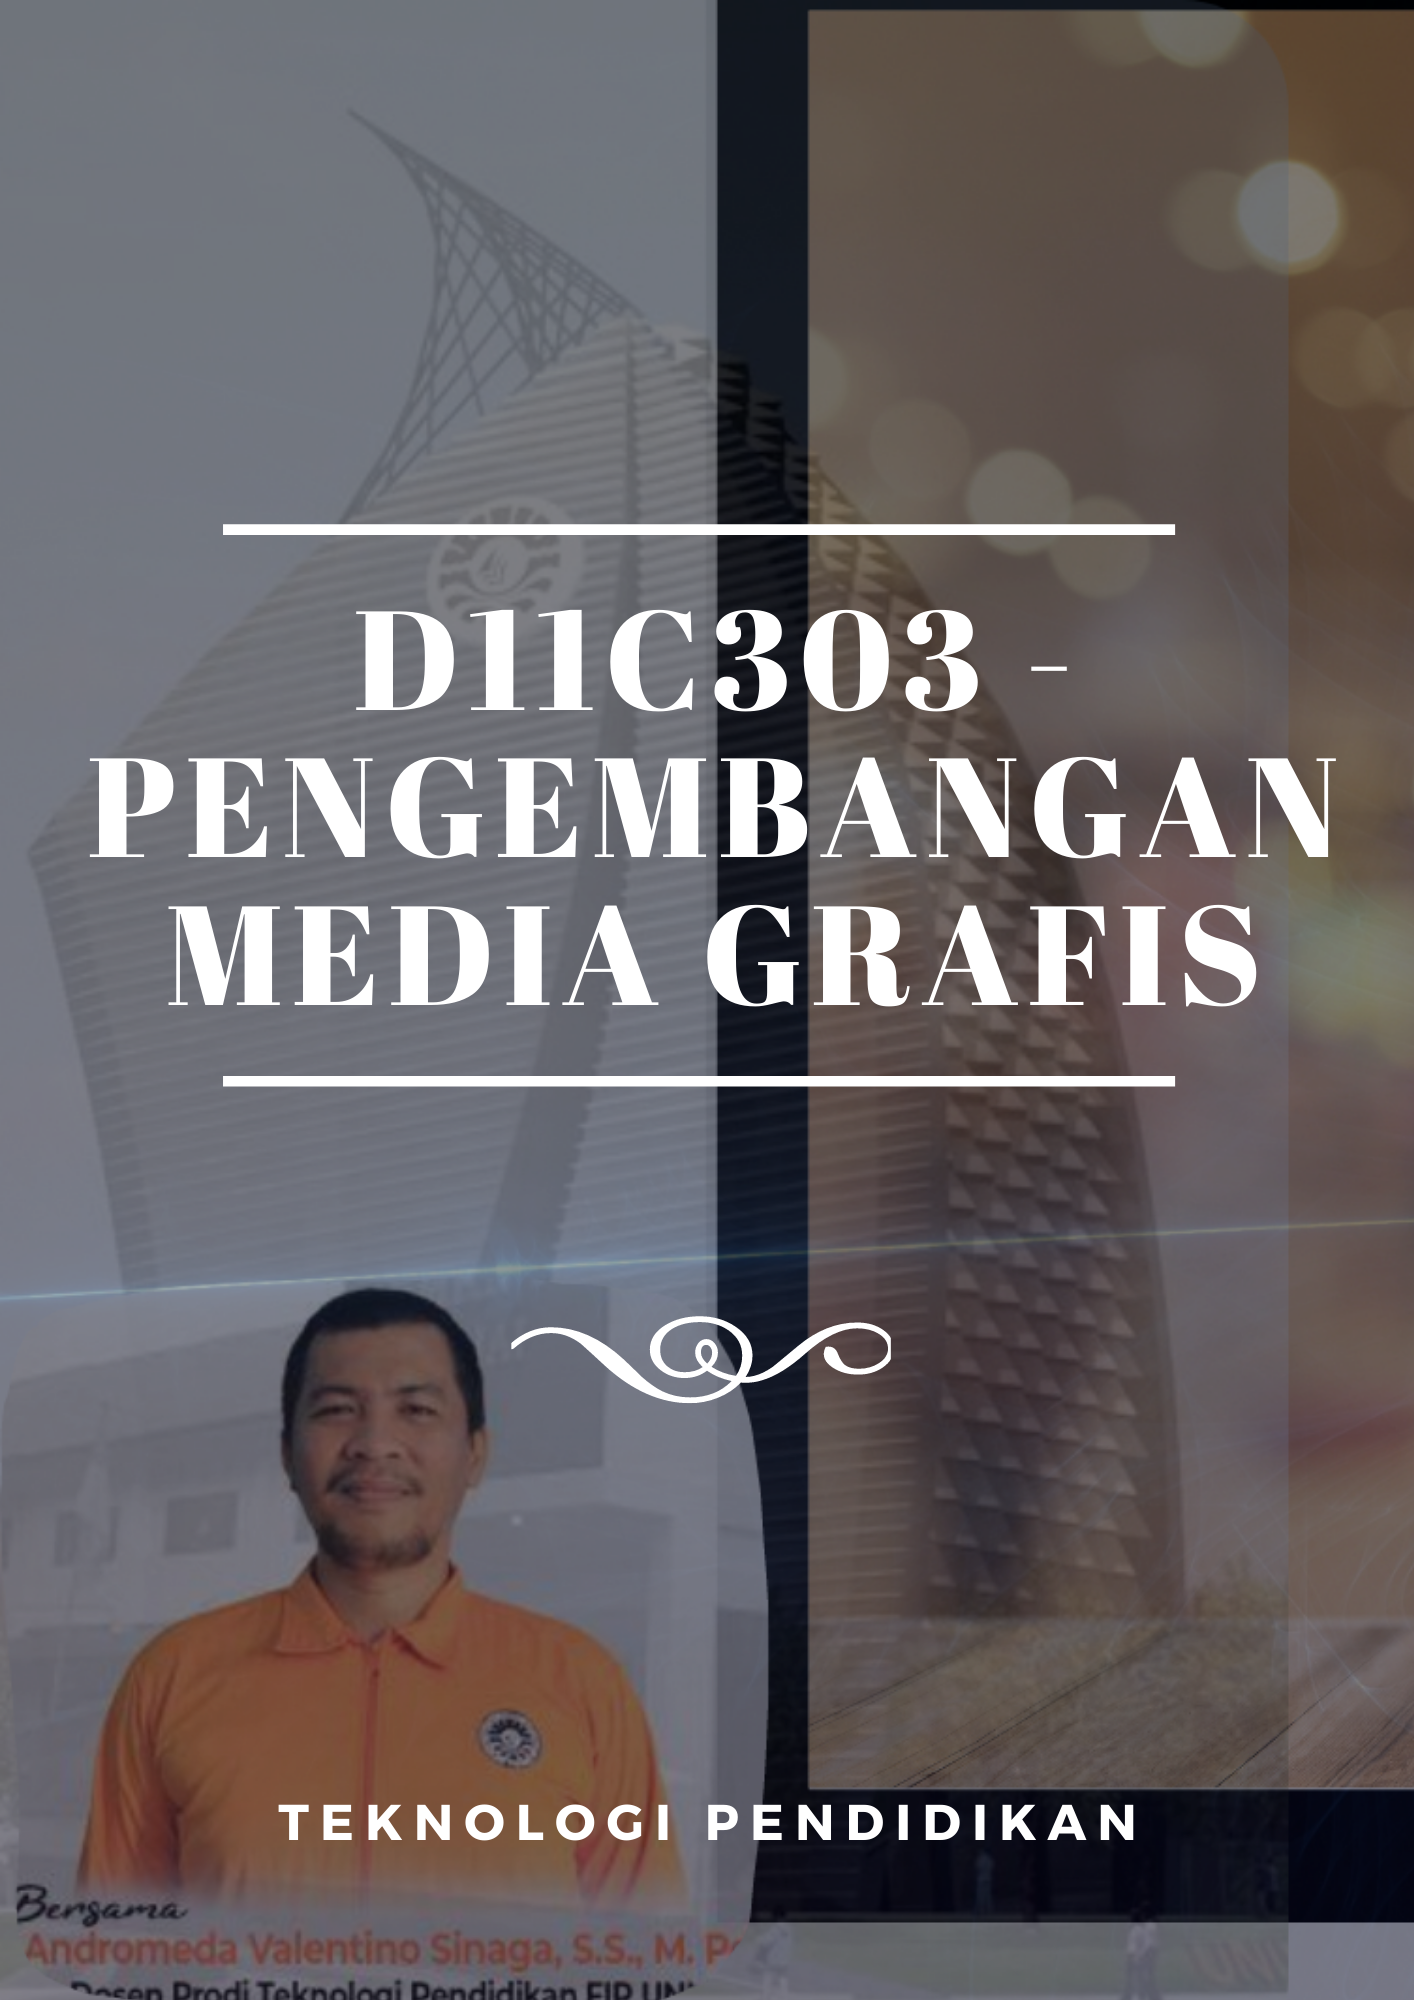 20211-PENGEMBANGAN MEDIA GRAFIS